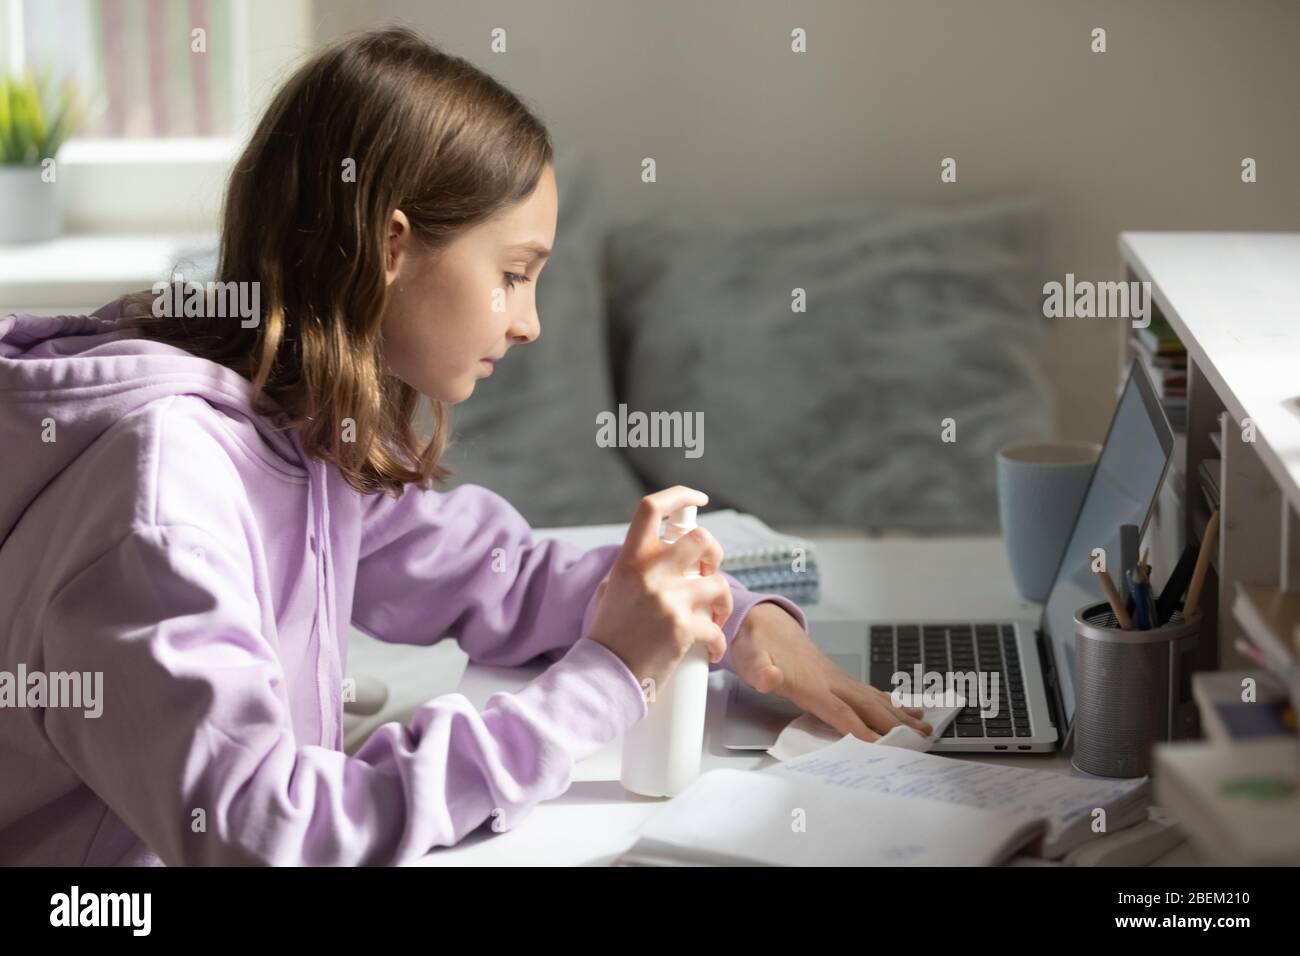 Une adolescente désinfecte son ordinateur avec du gel antibactérien à la maison Banque D'Images